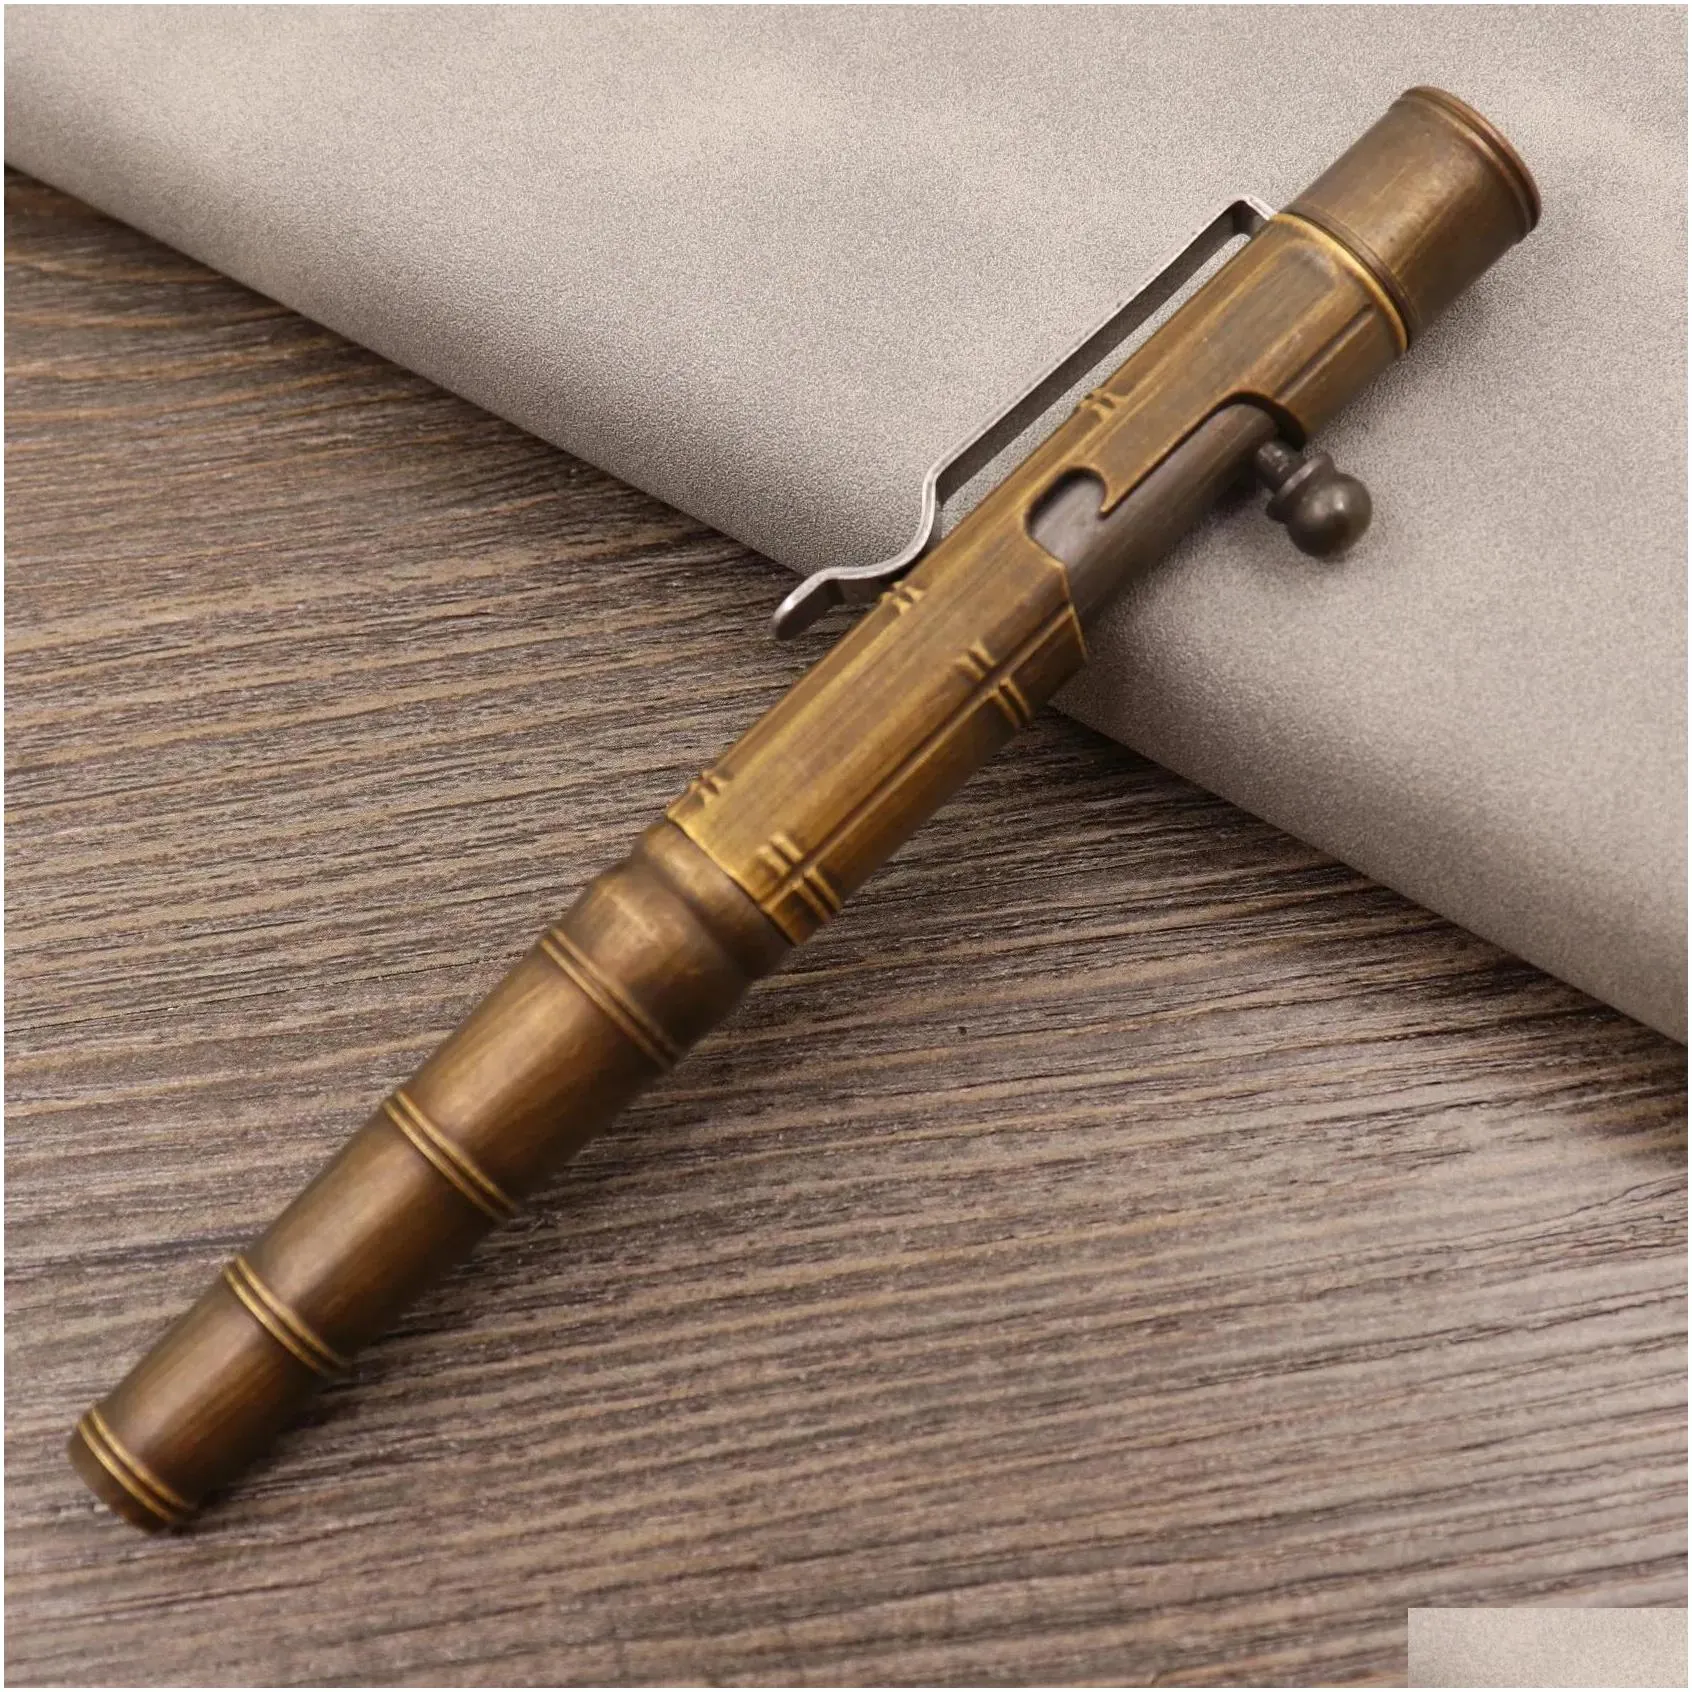 tools bolt action pen solid brass edc pen sixedge pocket pen metal tactical pen with refills and clip signature pen self defense tool